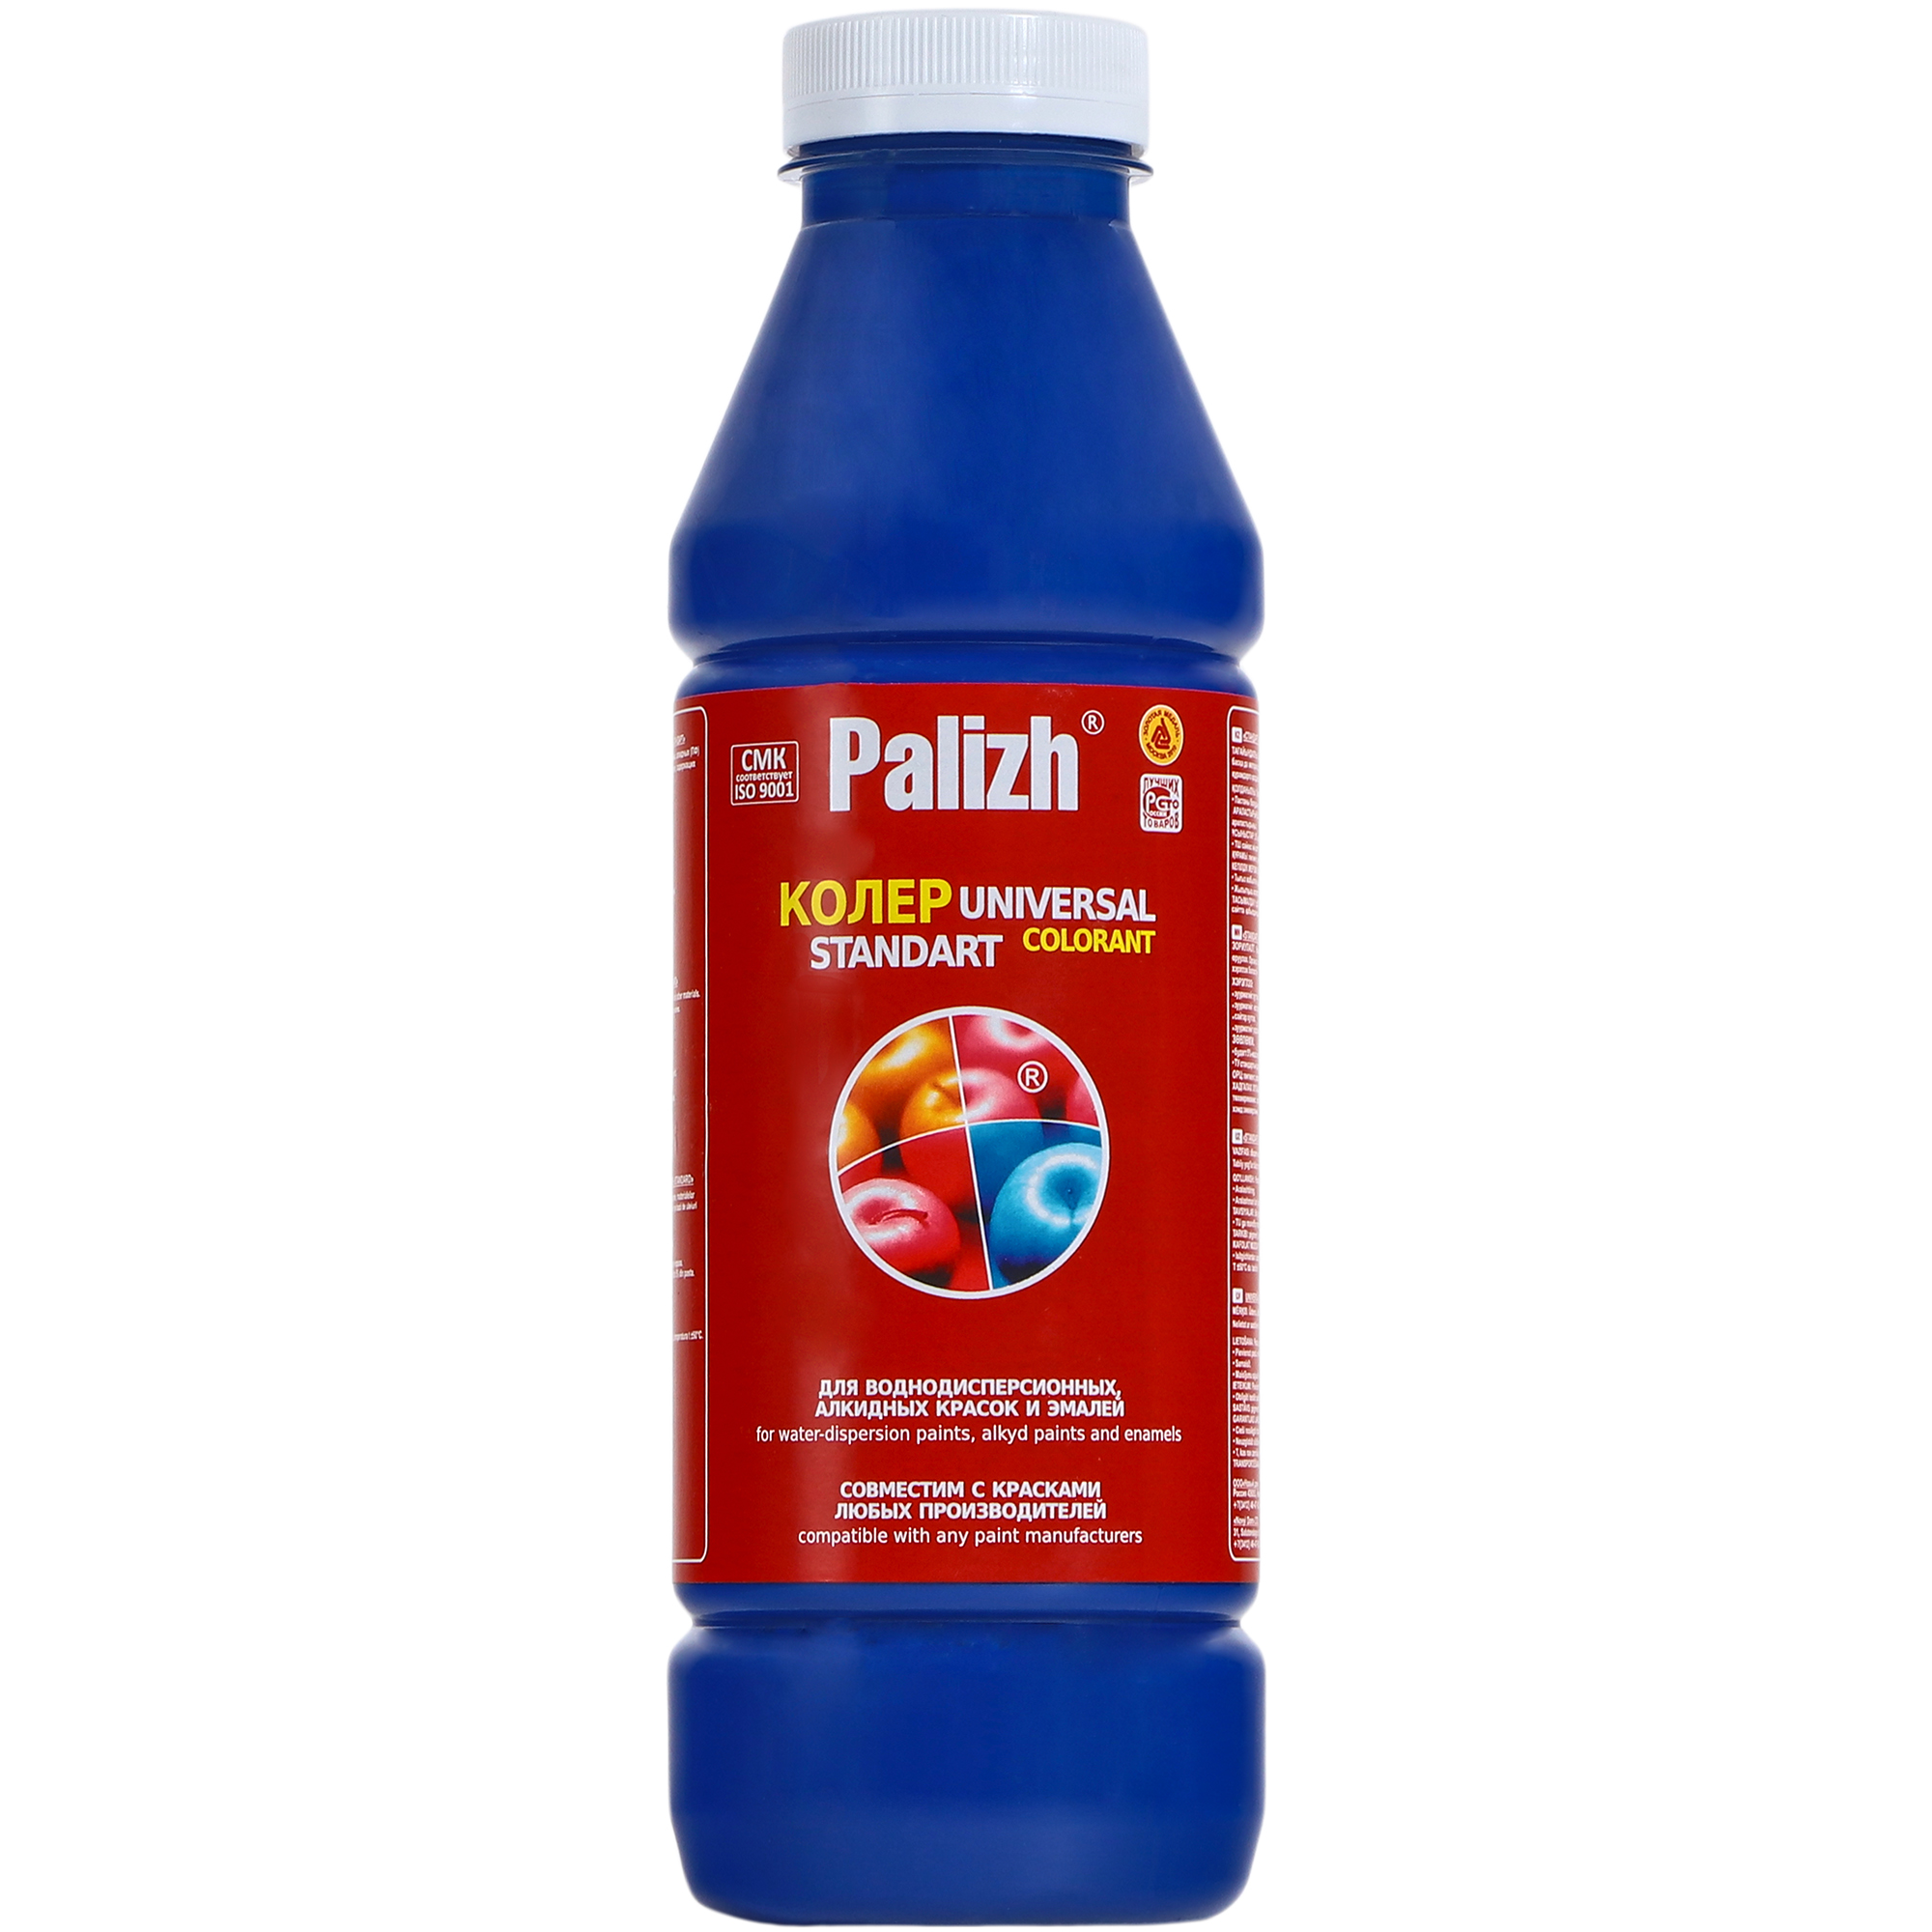 Паста универсальная колеровочная Palizh ультрамарин - 900 мл паста универсальная колеровочная palizh черника 900 мл